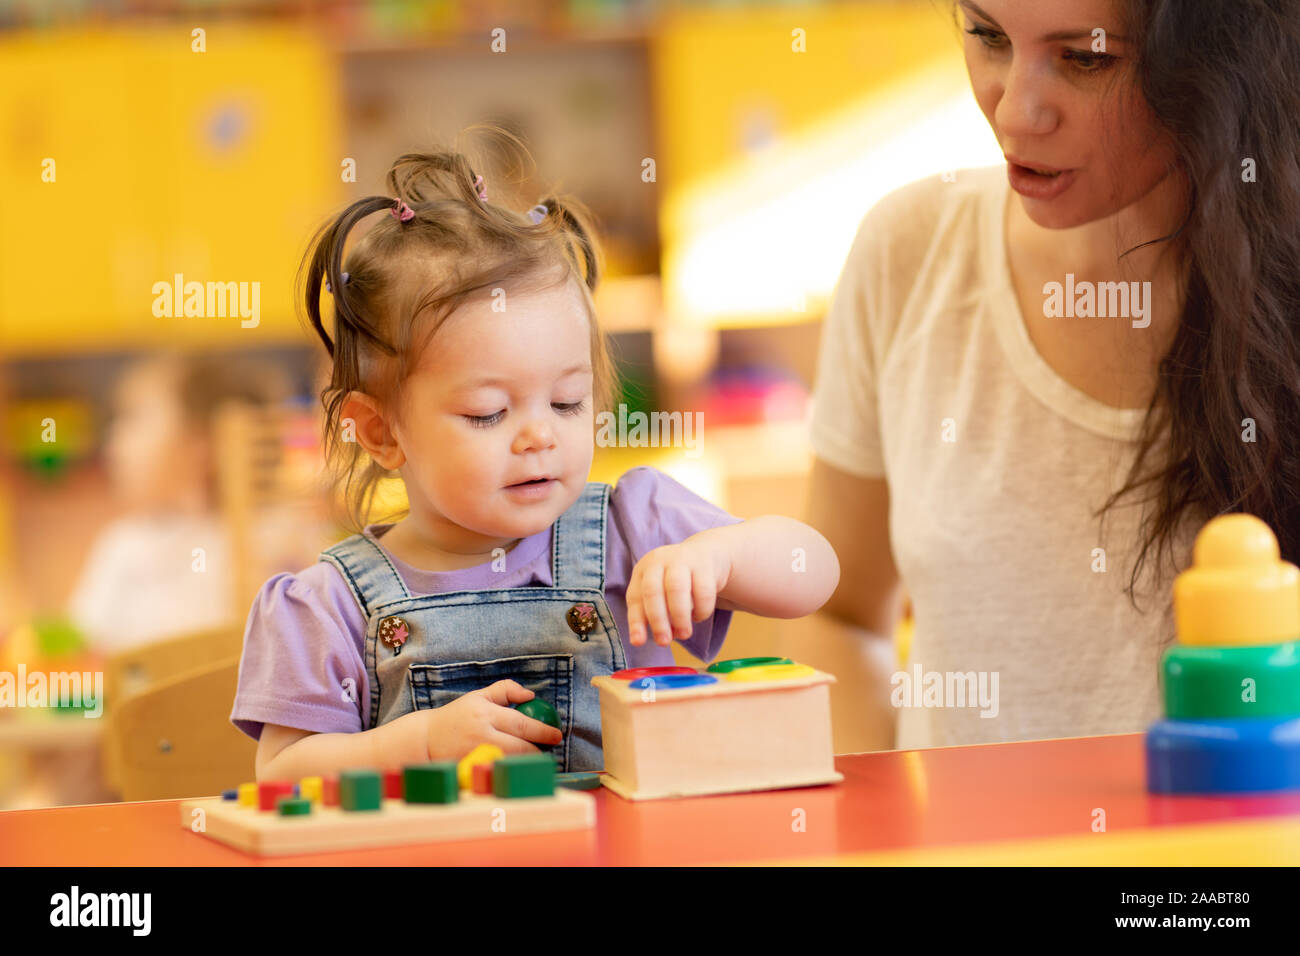 Padre y niño jugar con juguetes educativos, apilado y arreglando piezas coloridas. Aprendizaje mediante la experiencia concepto Foto de stock